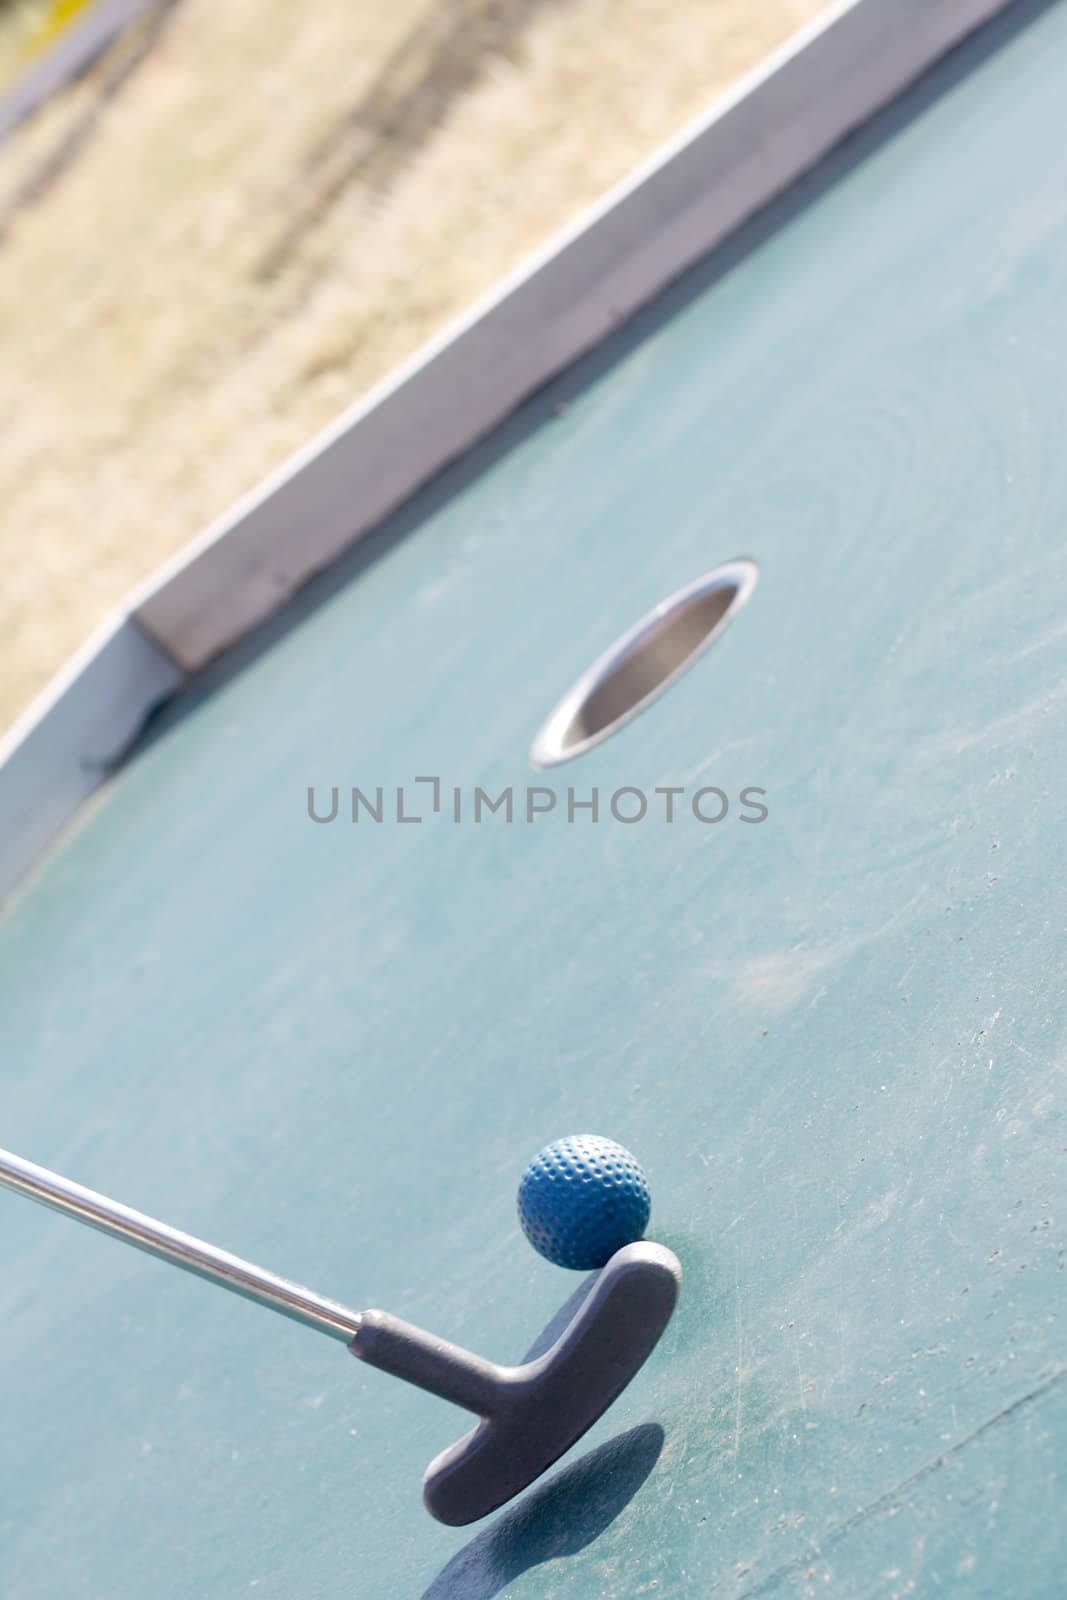 Miniature golf by leeser